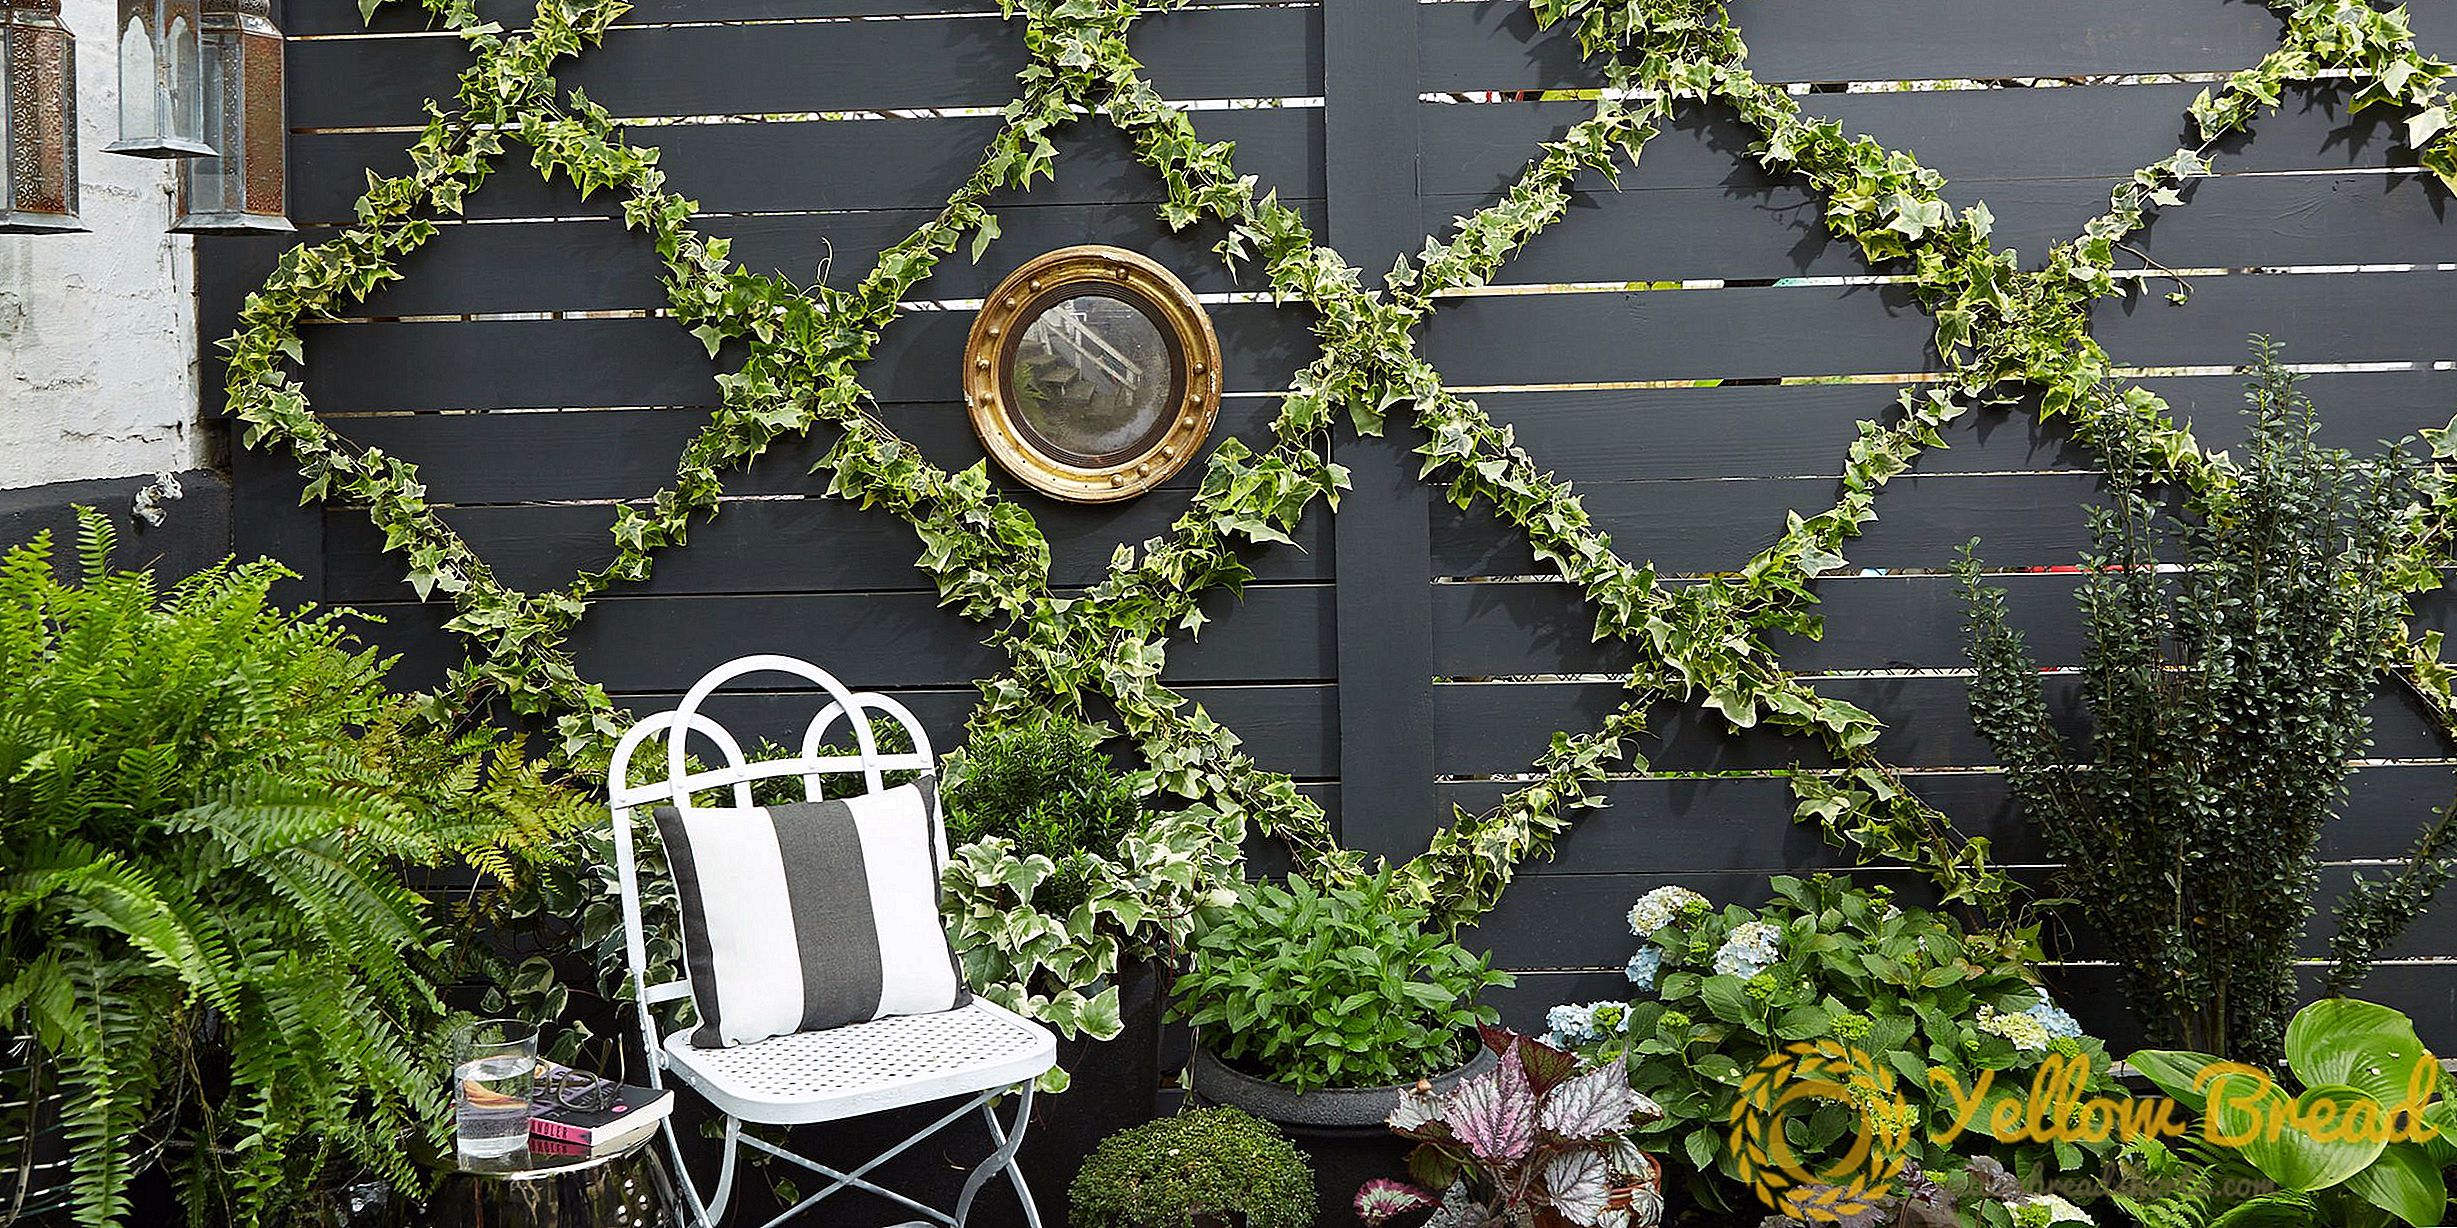 Um projeto de jardim DIY que cria um espaço luxuoso em poucos passos simples